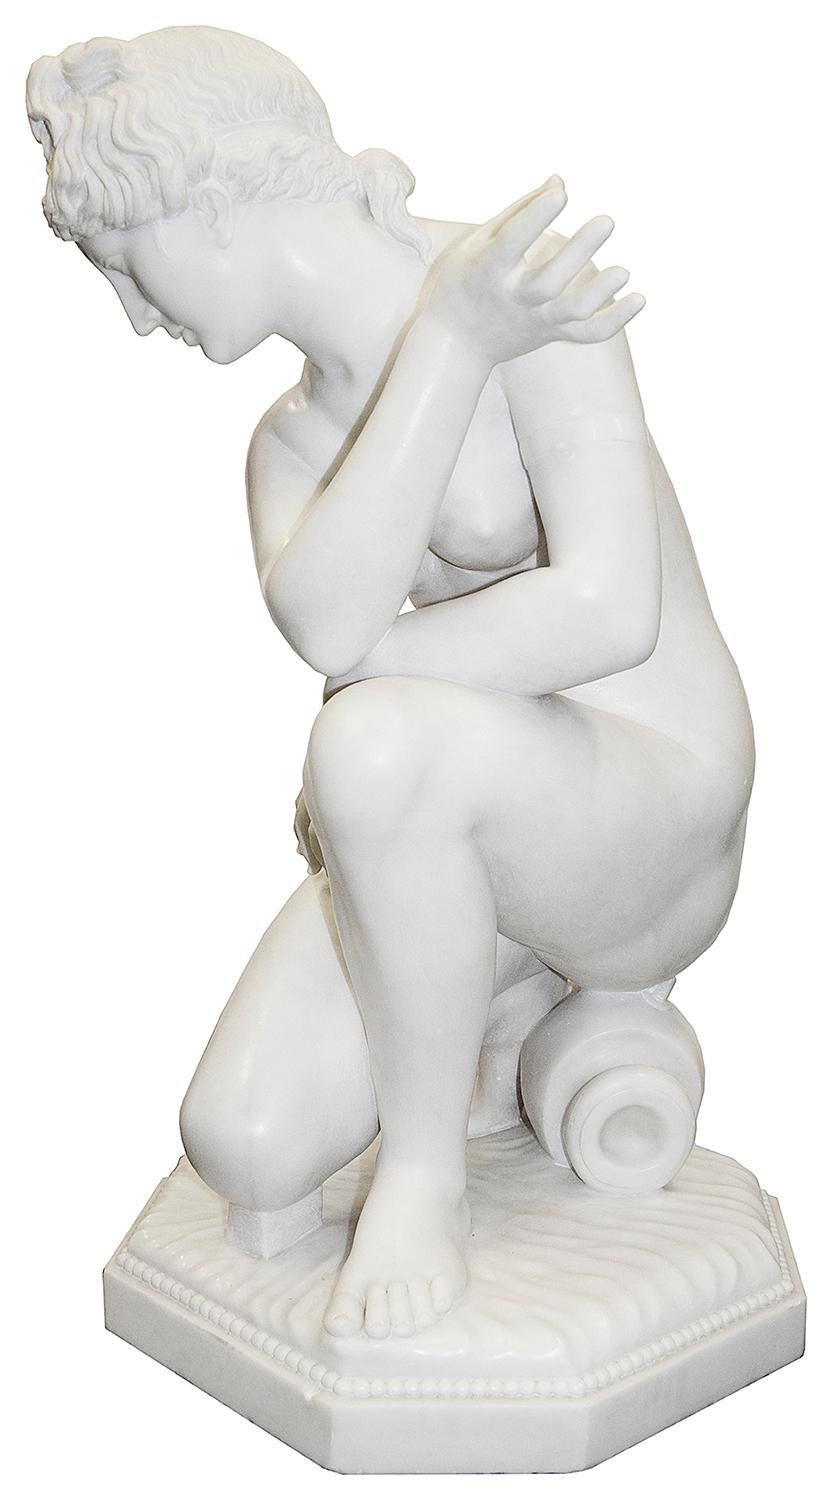 Eine hochwertige Carrera-Marmor-Statue aus dem späten 19. Jahrhundert, die die 